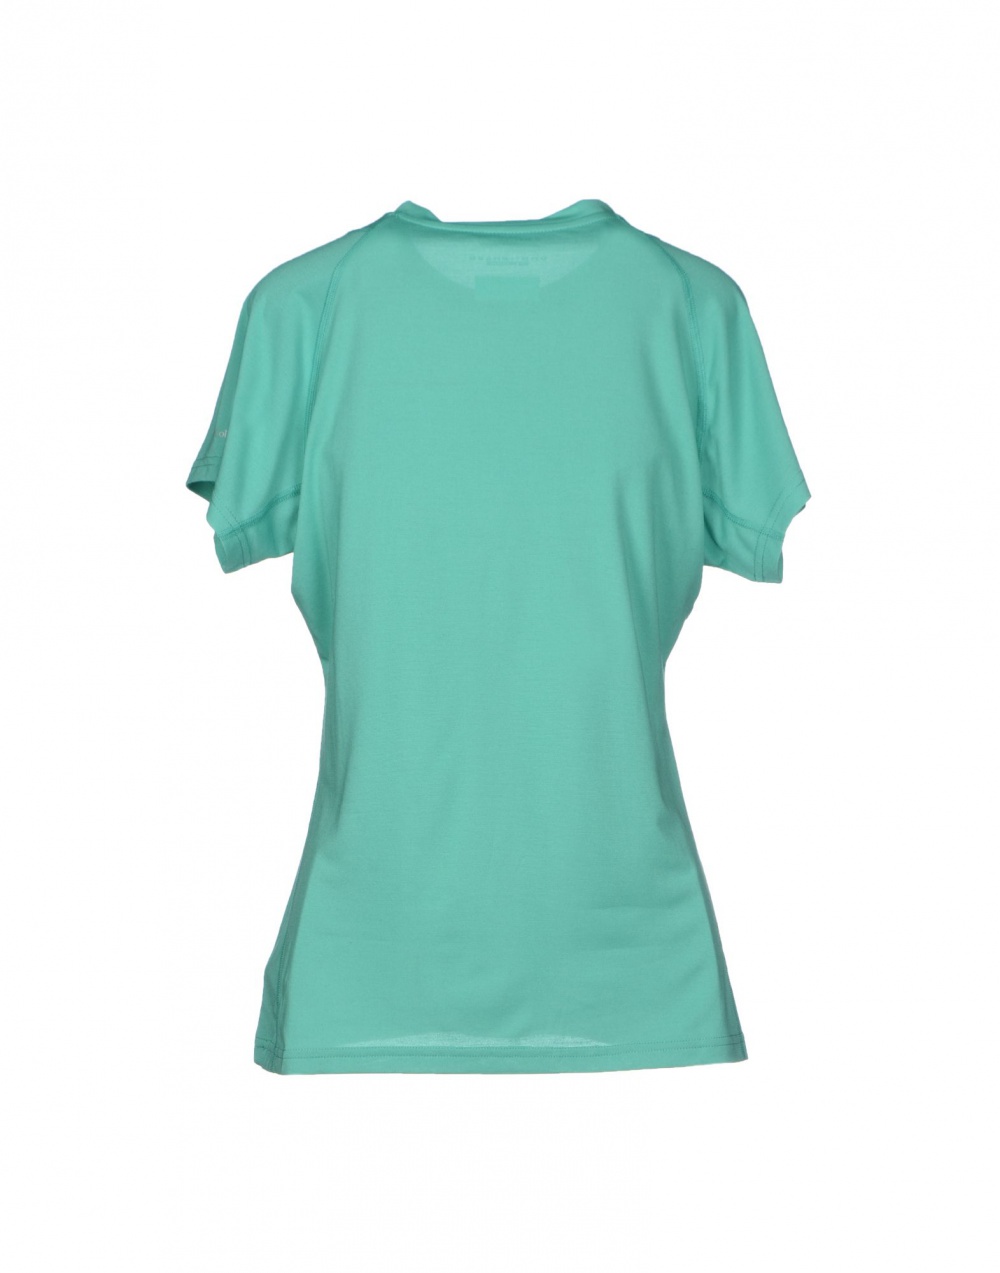 Спортивная футболка COLUMBIA, L (Международный Размер), Зеленый. На рос. 48-50